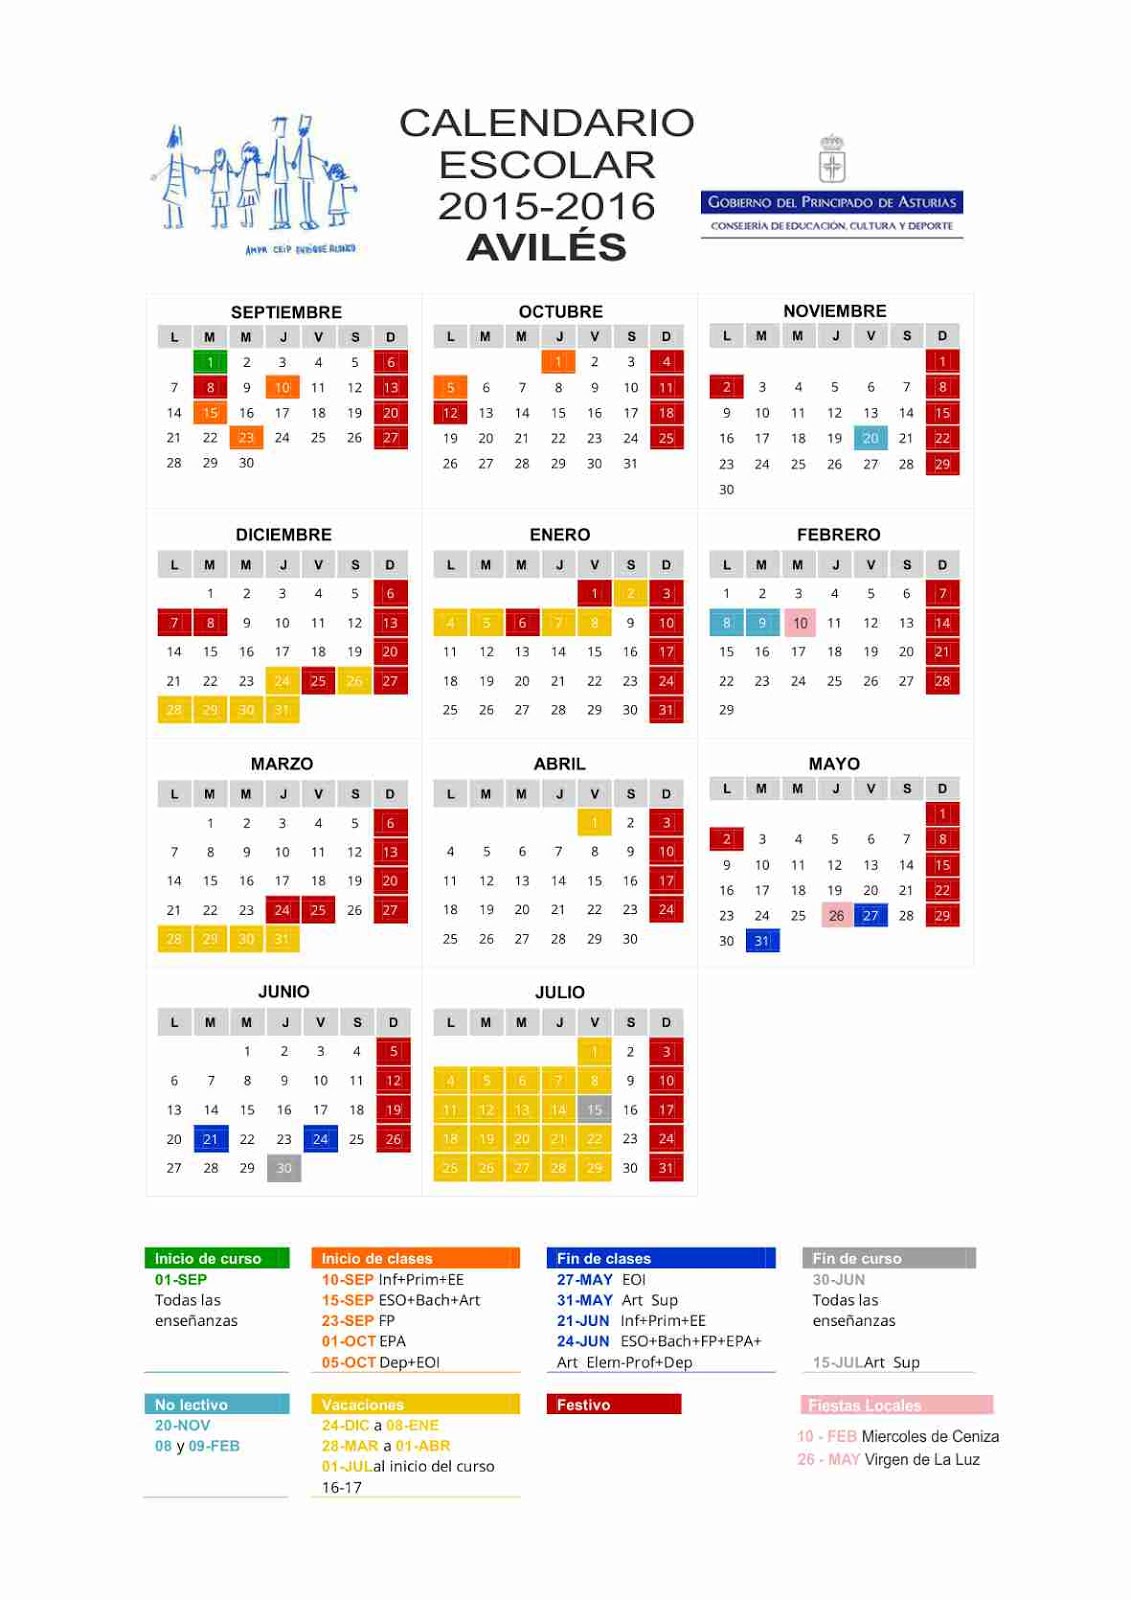 Calendario escolar 2015 - 2016